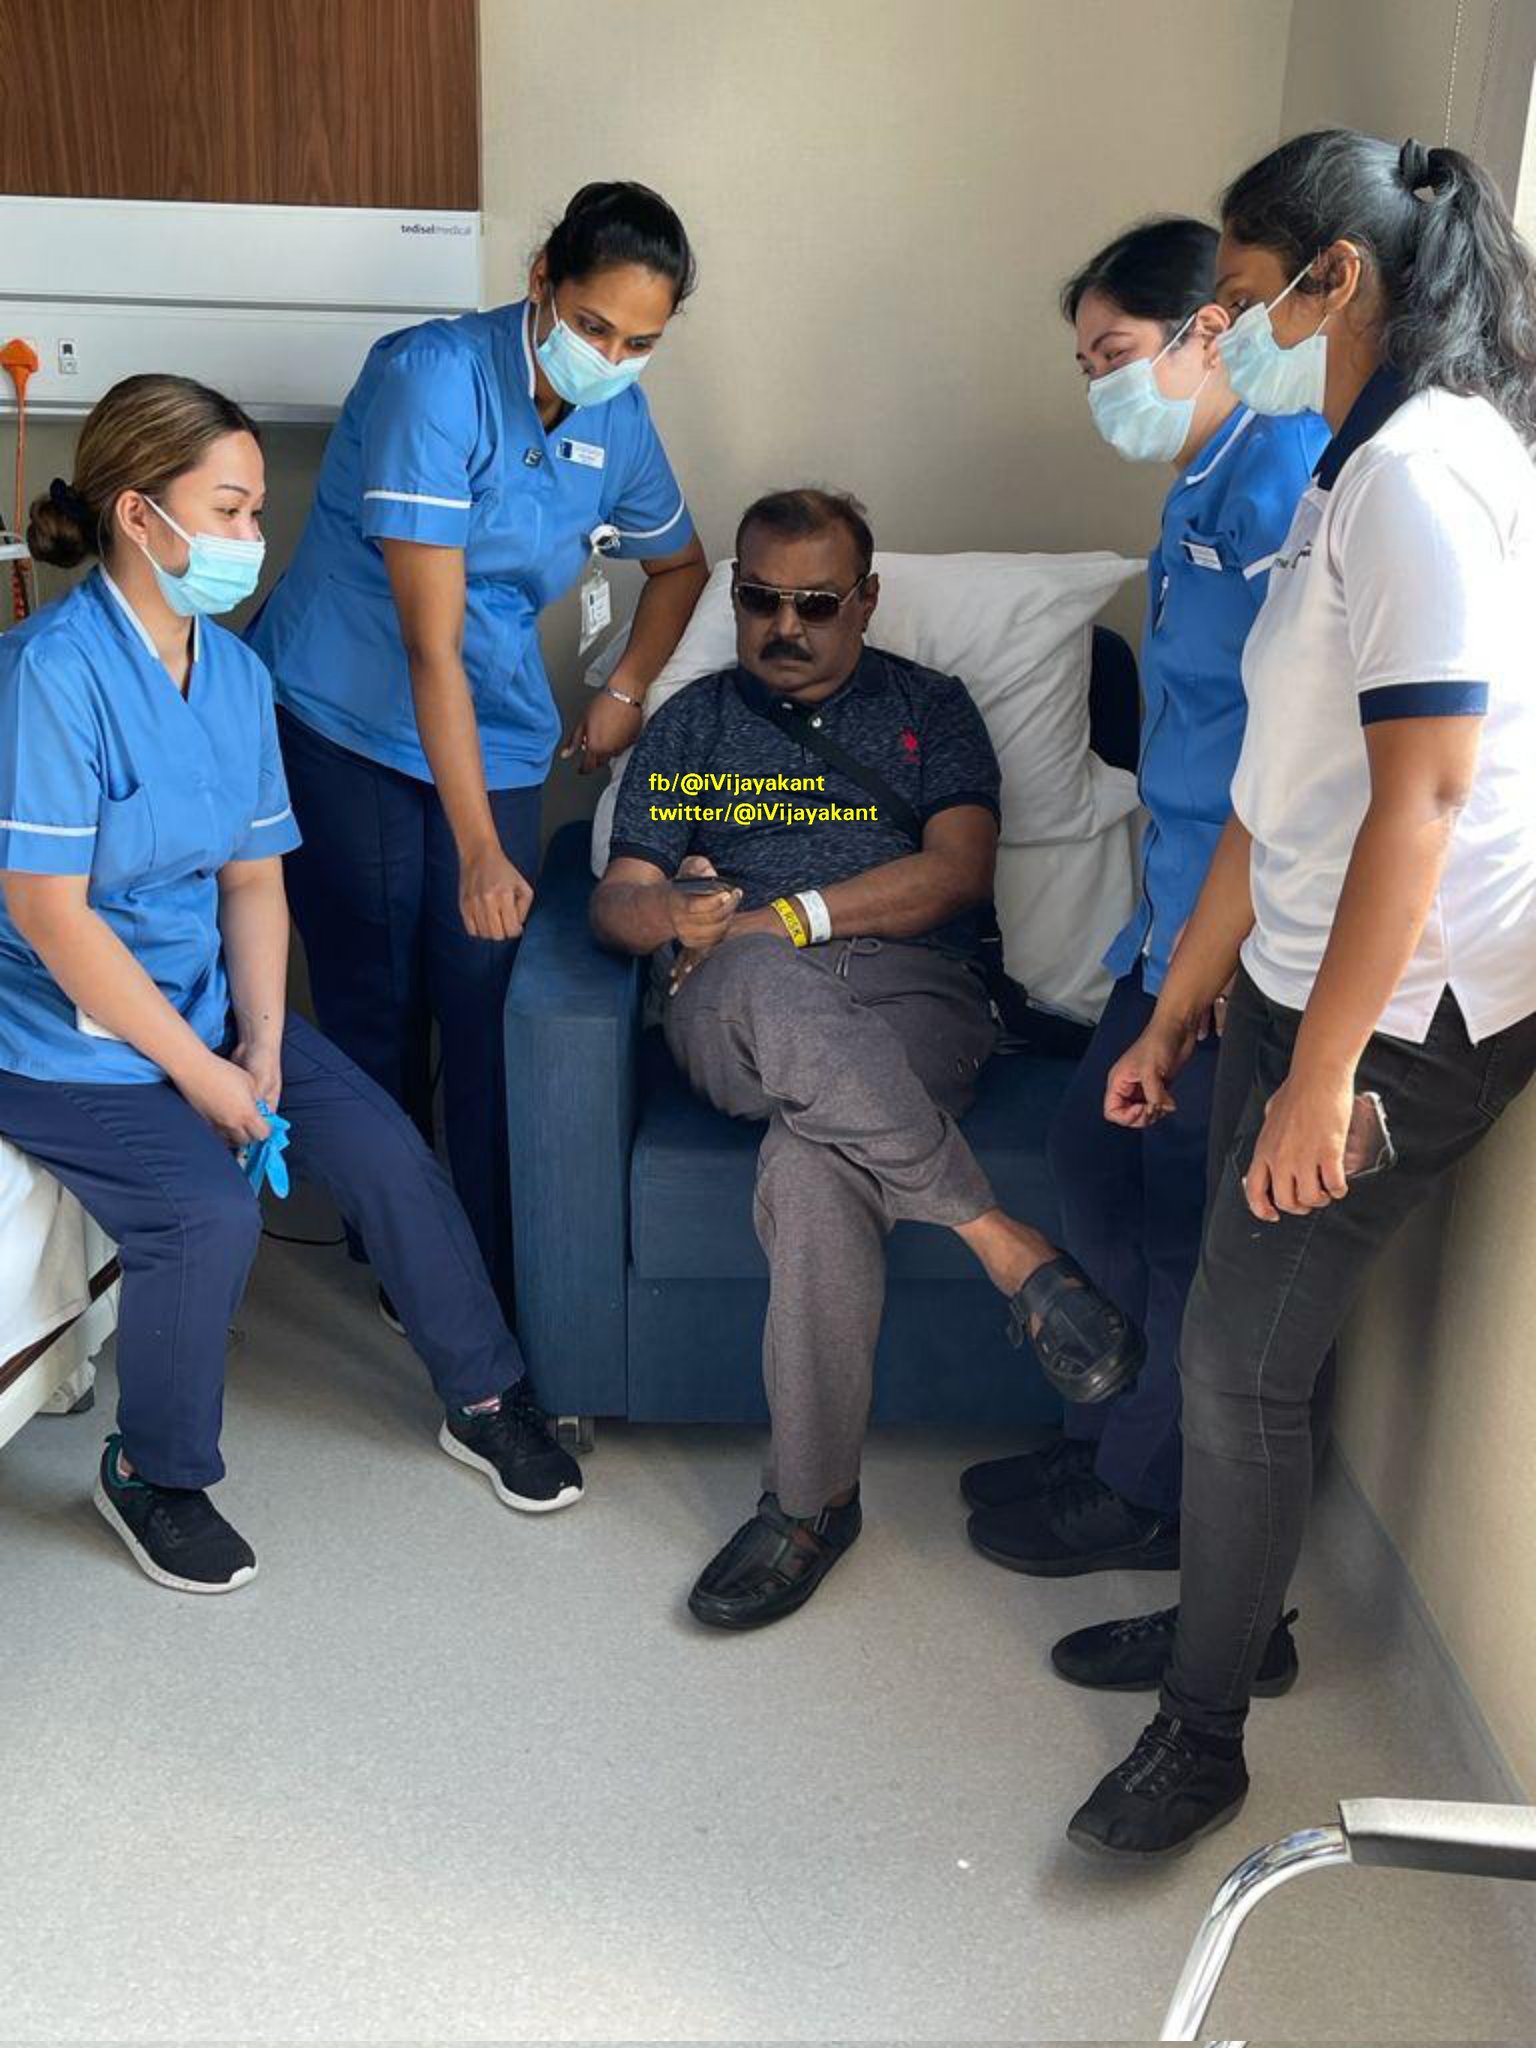 captain Vijaykanth shared a photo nurse dubai on his Twitter